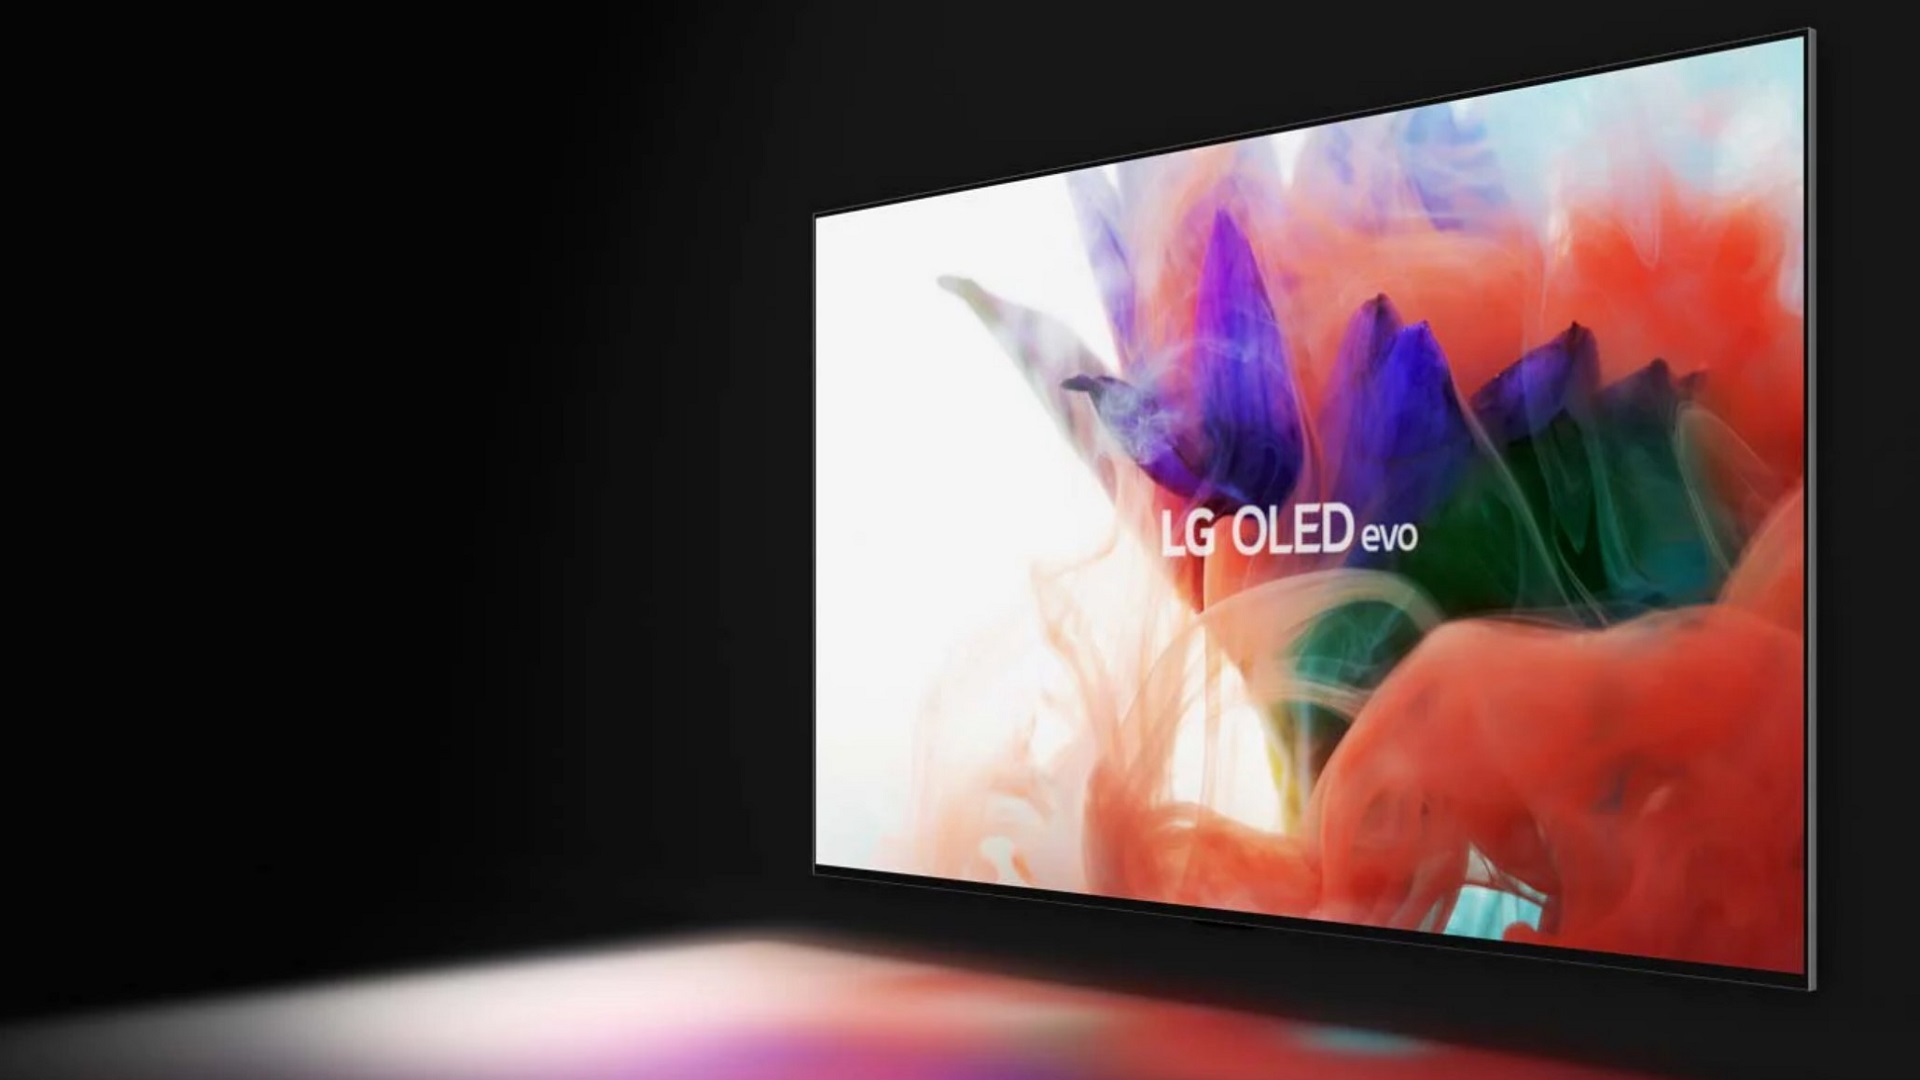  LG dévoile les derniers téléviseurs OLED evo à la pointe de l'innovation et de l'évolution